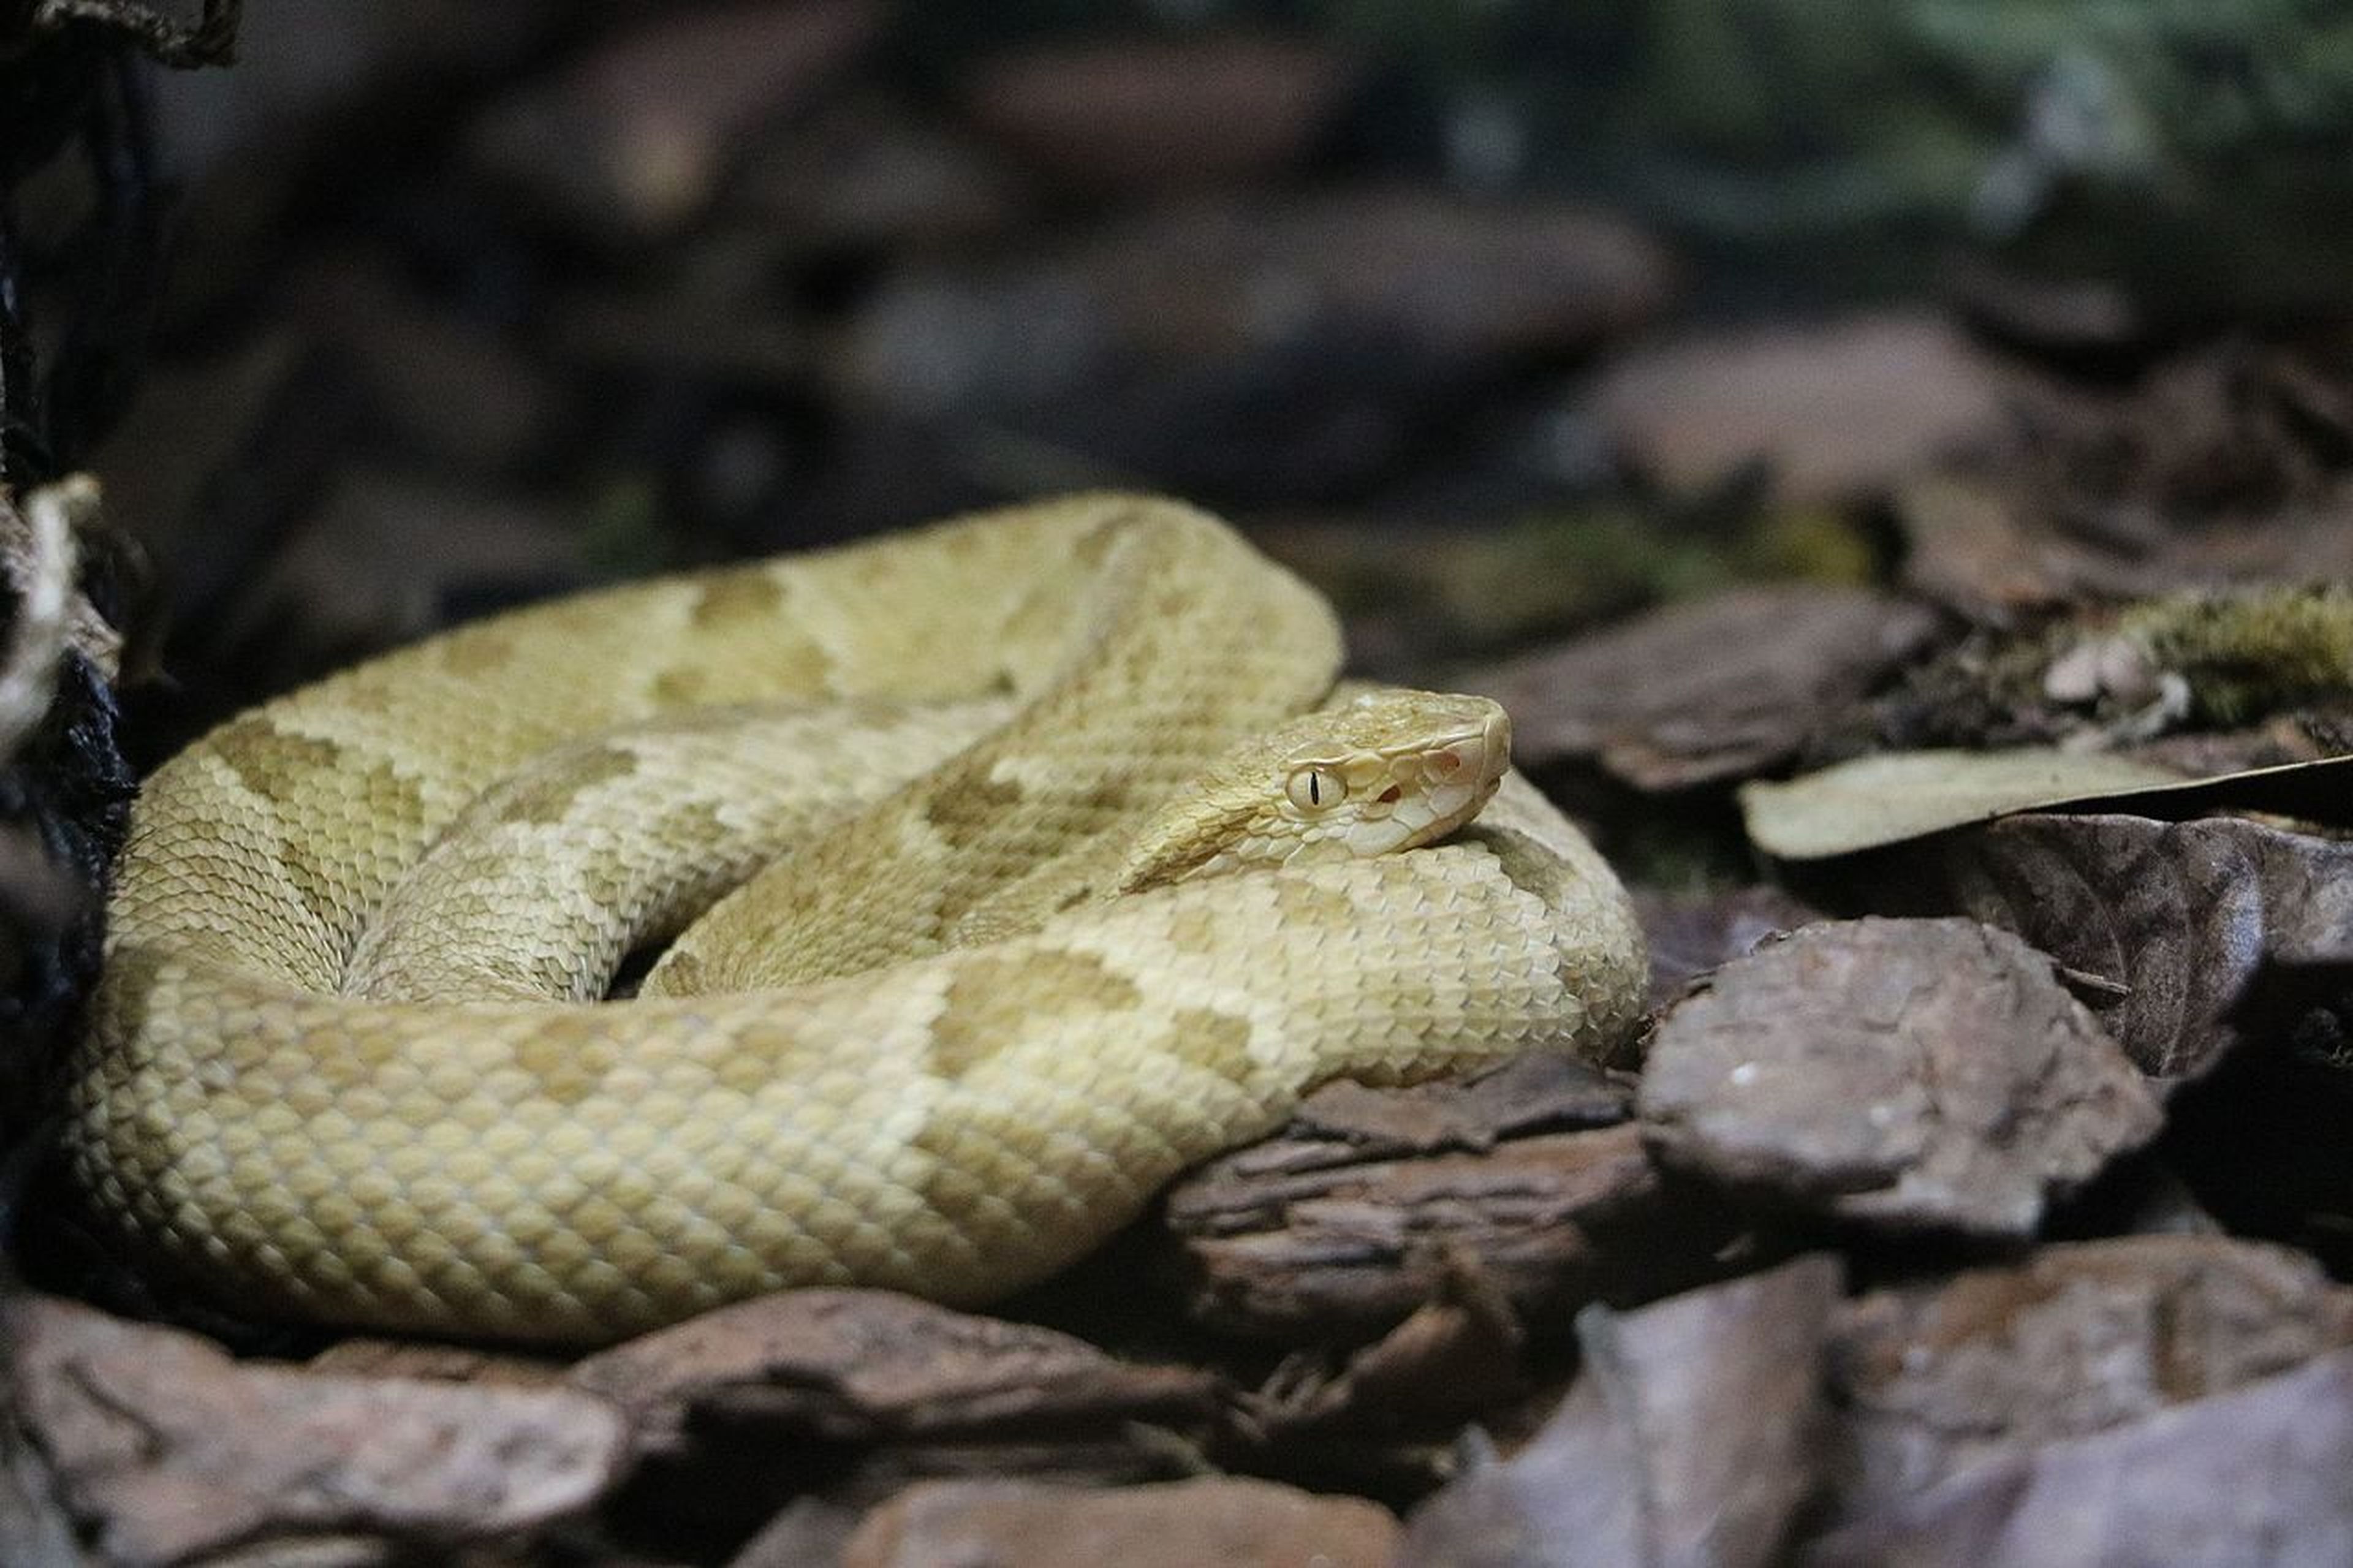 Brothrops insularis, la serpiente más venenosa del mundo